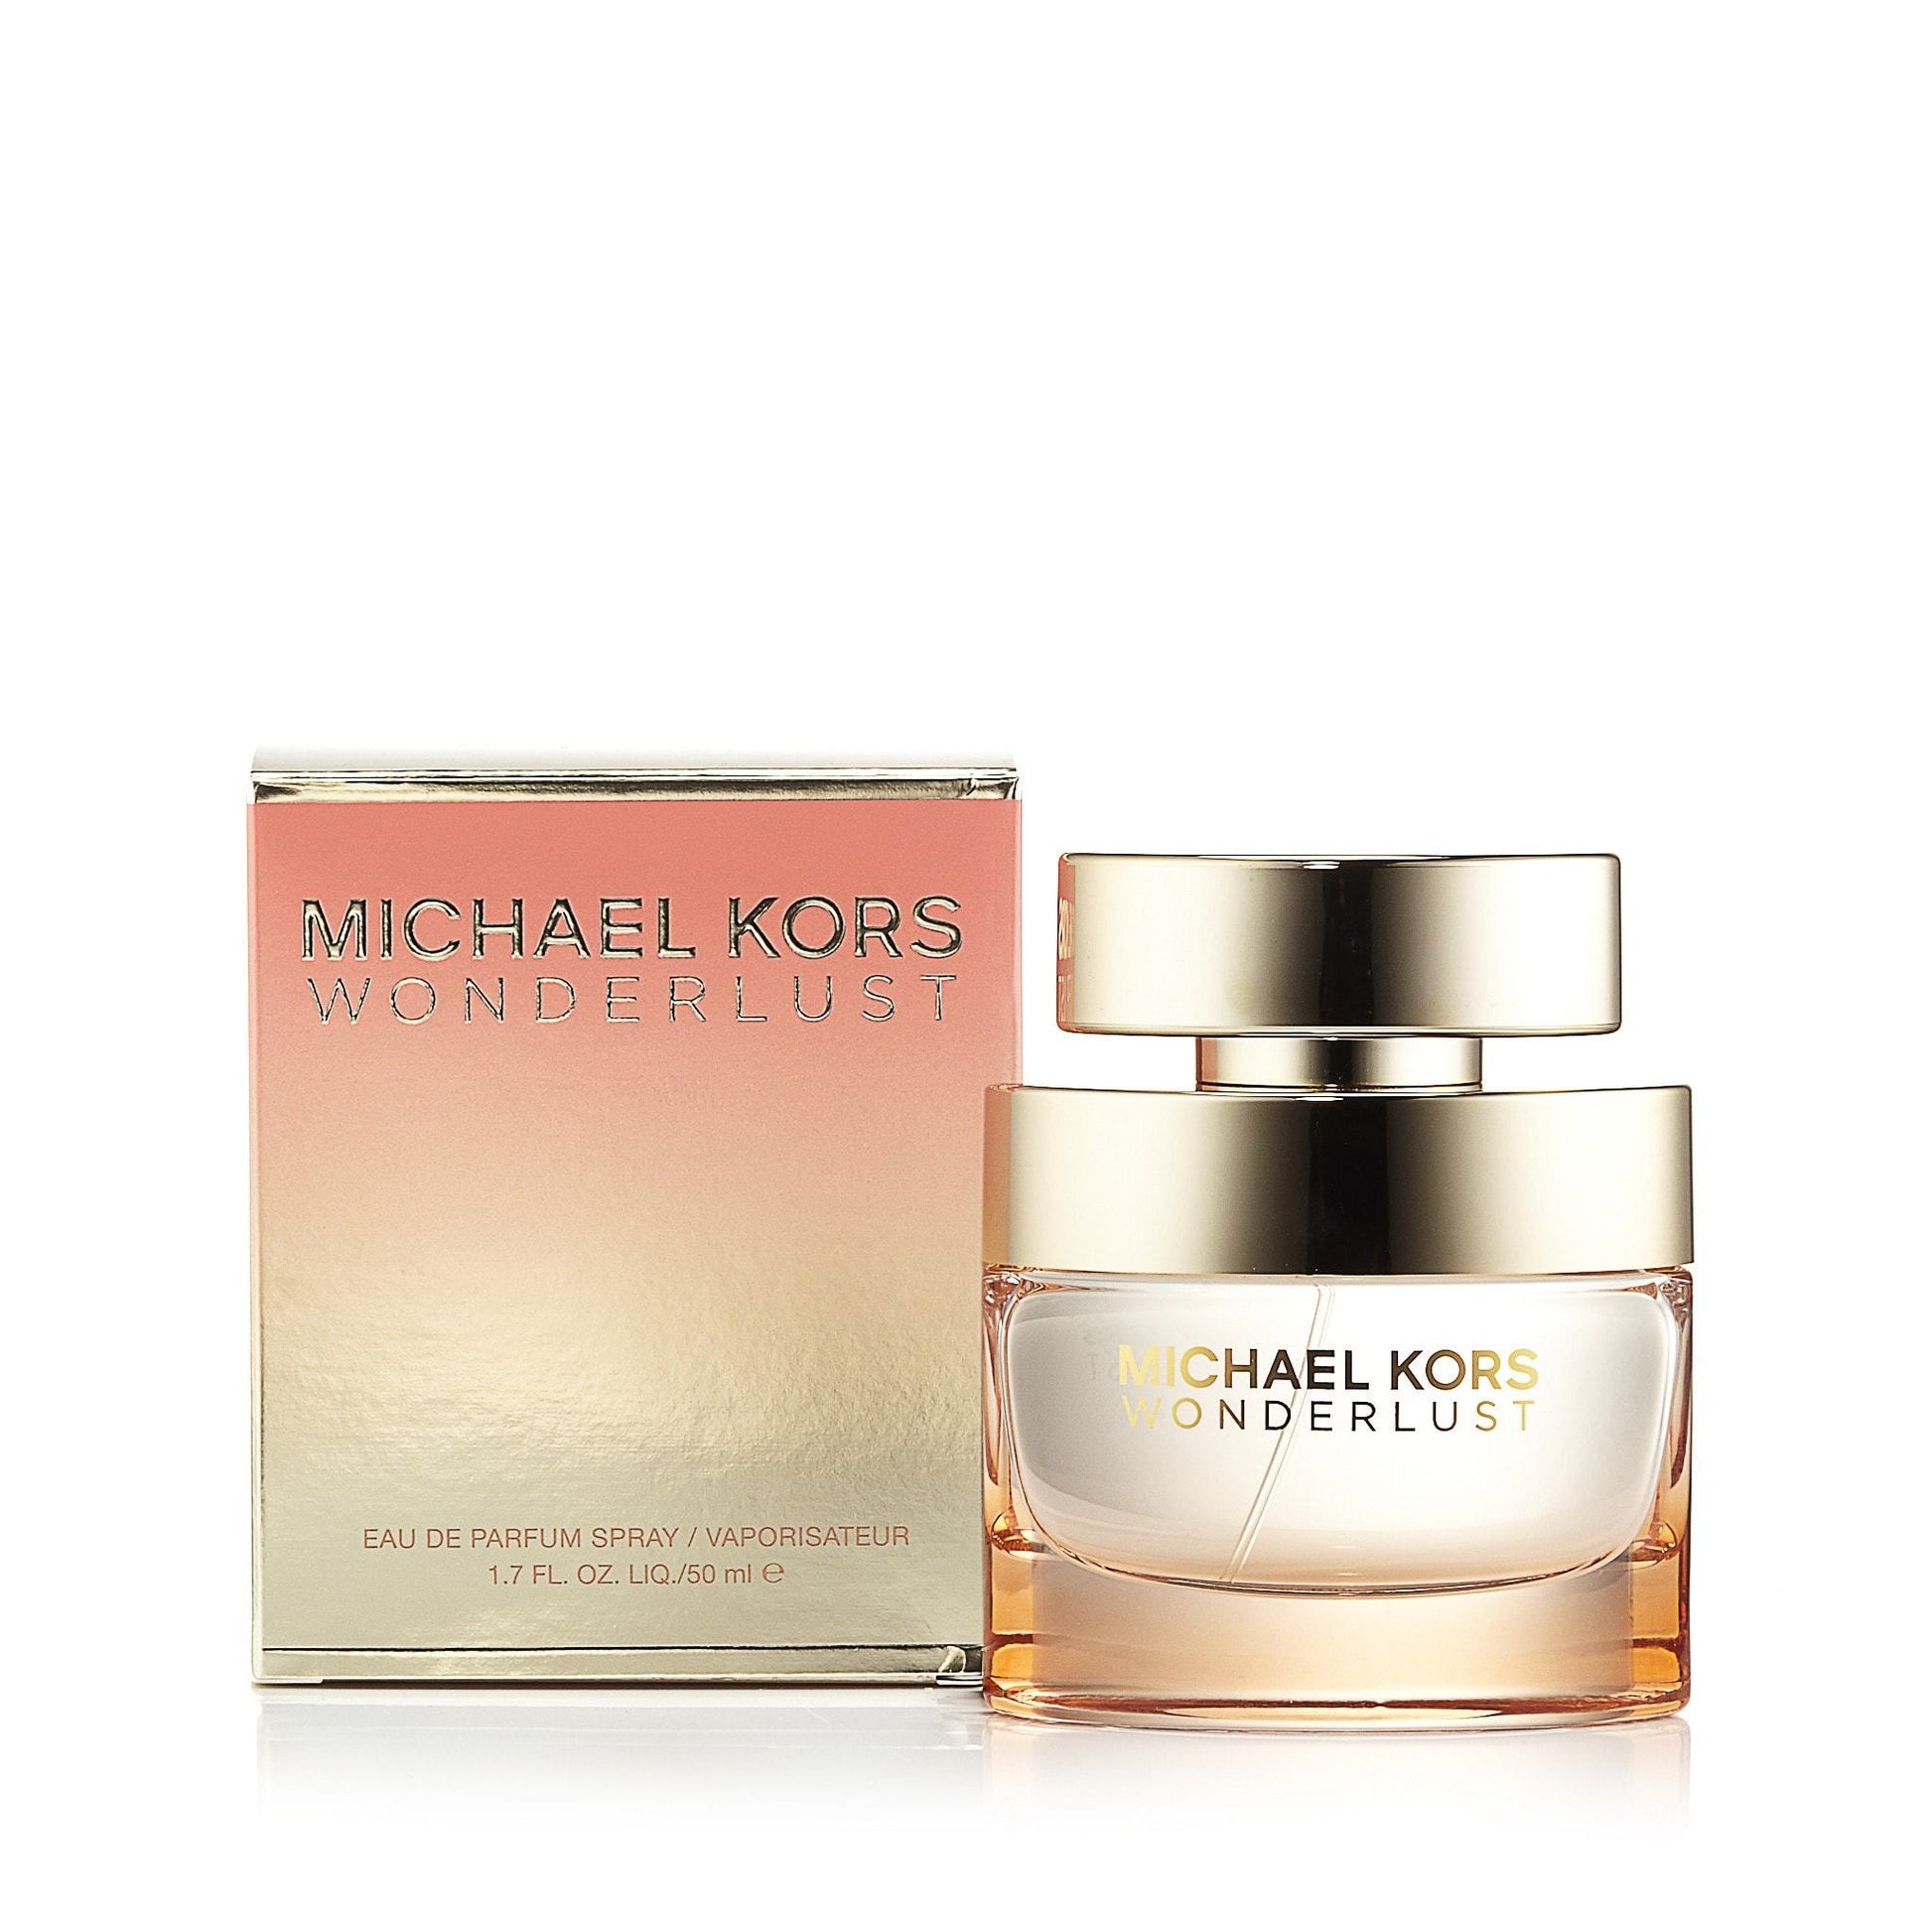 Wonderlust Eau de Parfum Spray for Women by Michael Kors, Product image 4